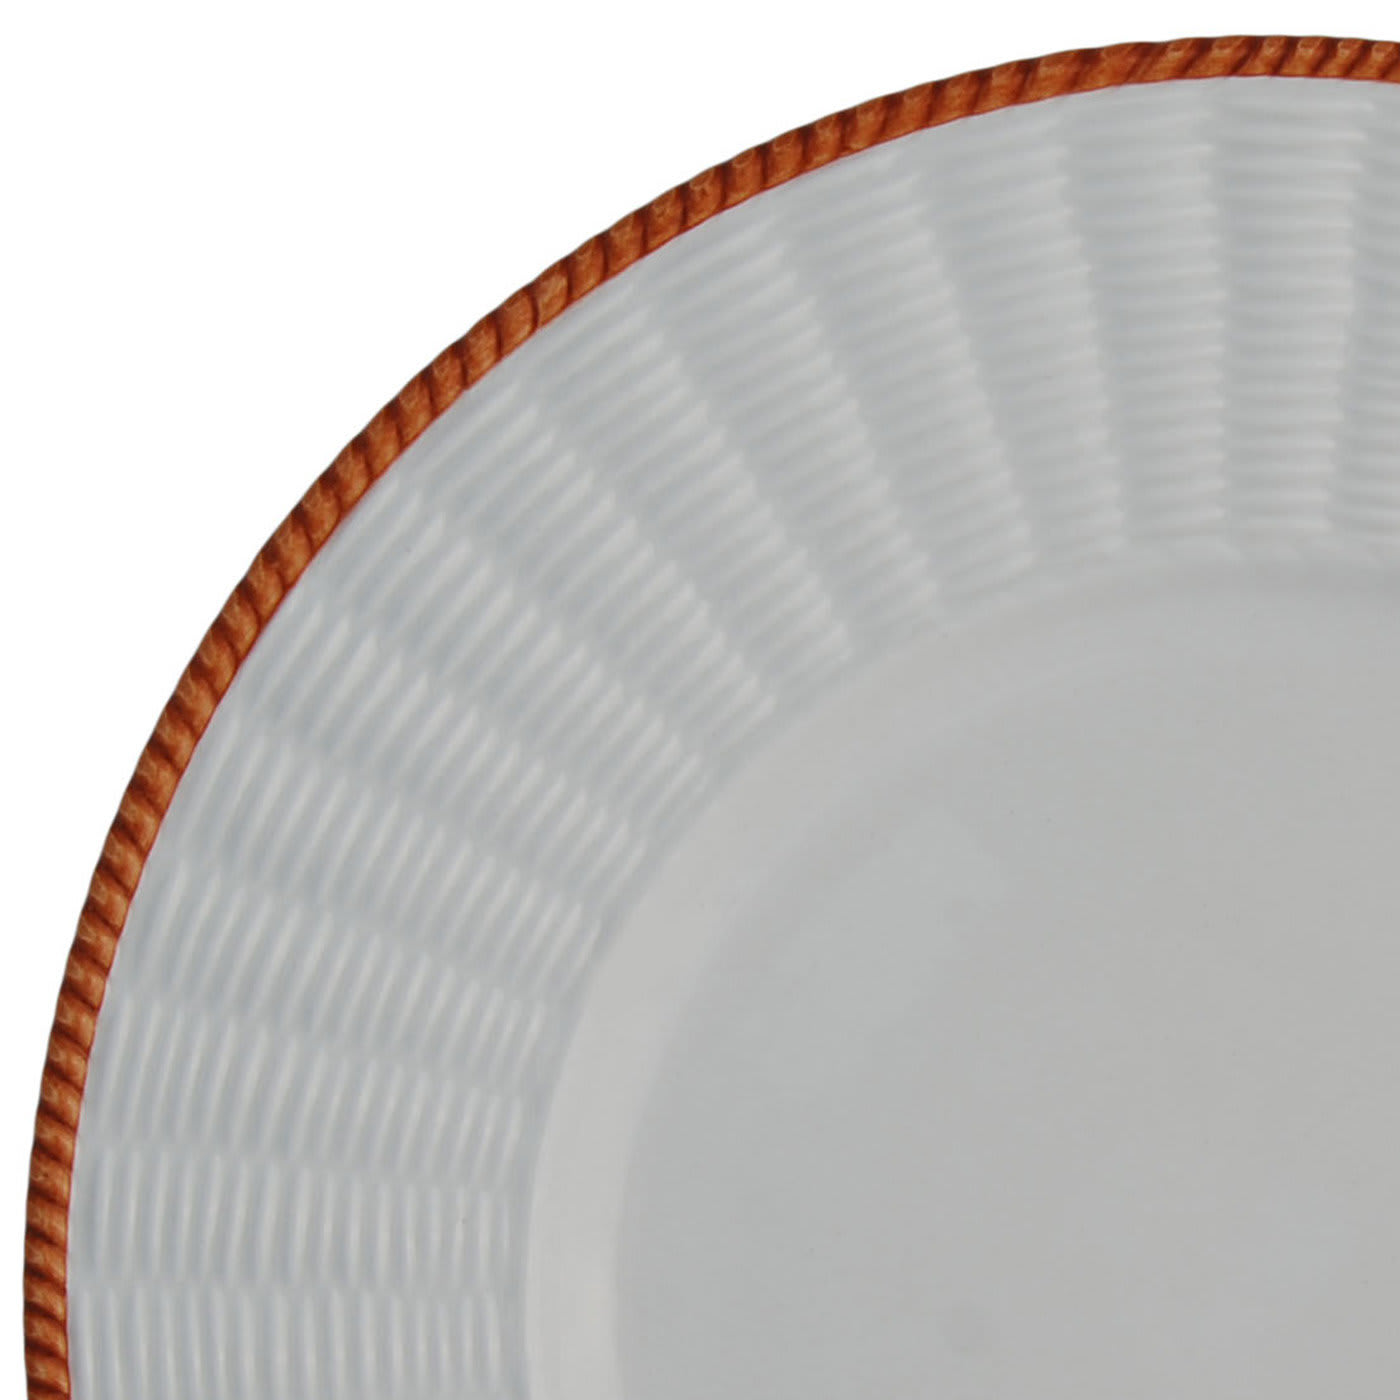 Set of 4 Orange Wicker Plates - Este Ceramiche